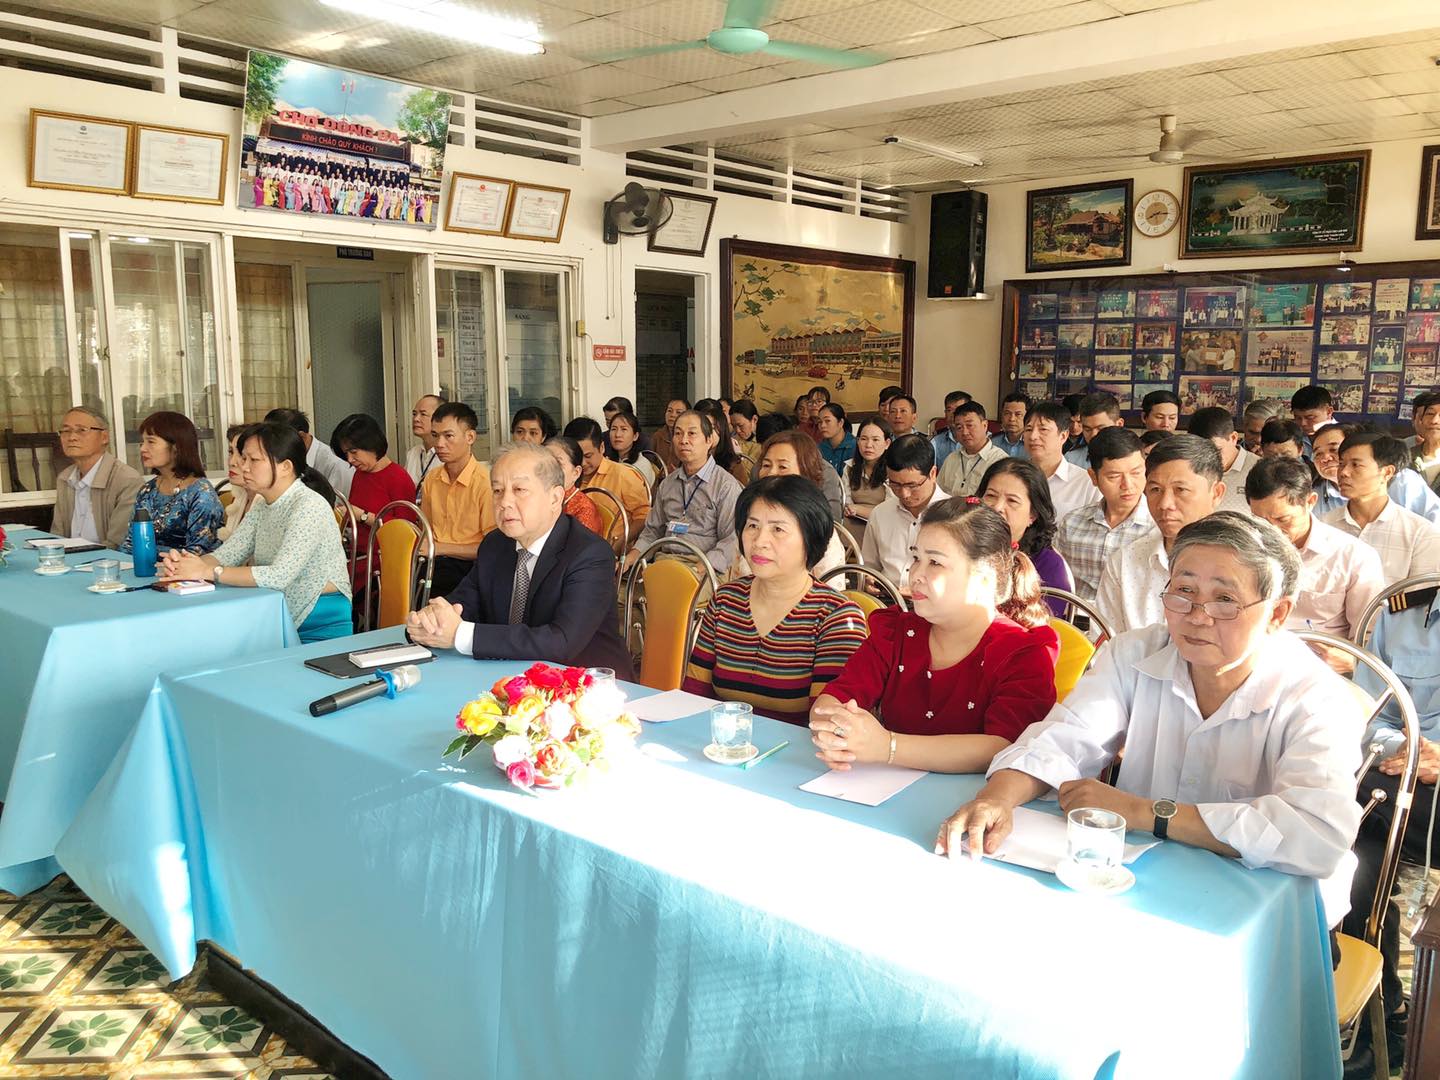 Đồng chí Phan Ngọc Thọ - Phó Bí thư thường trực Tỉnh ủy nói chuyện với tiểu thương, viên chức Ban quản lý chợ Đông Ba về phát triển Tỉnh Thừa Thiên Huế đến năm 2030 tầm nhìn đến năm 2045.